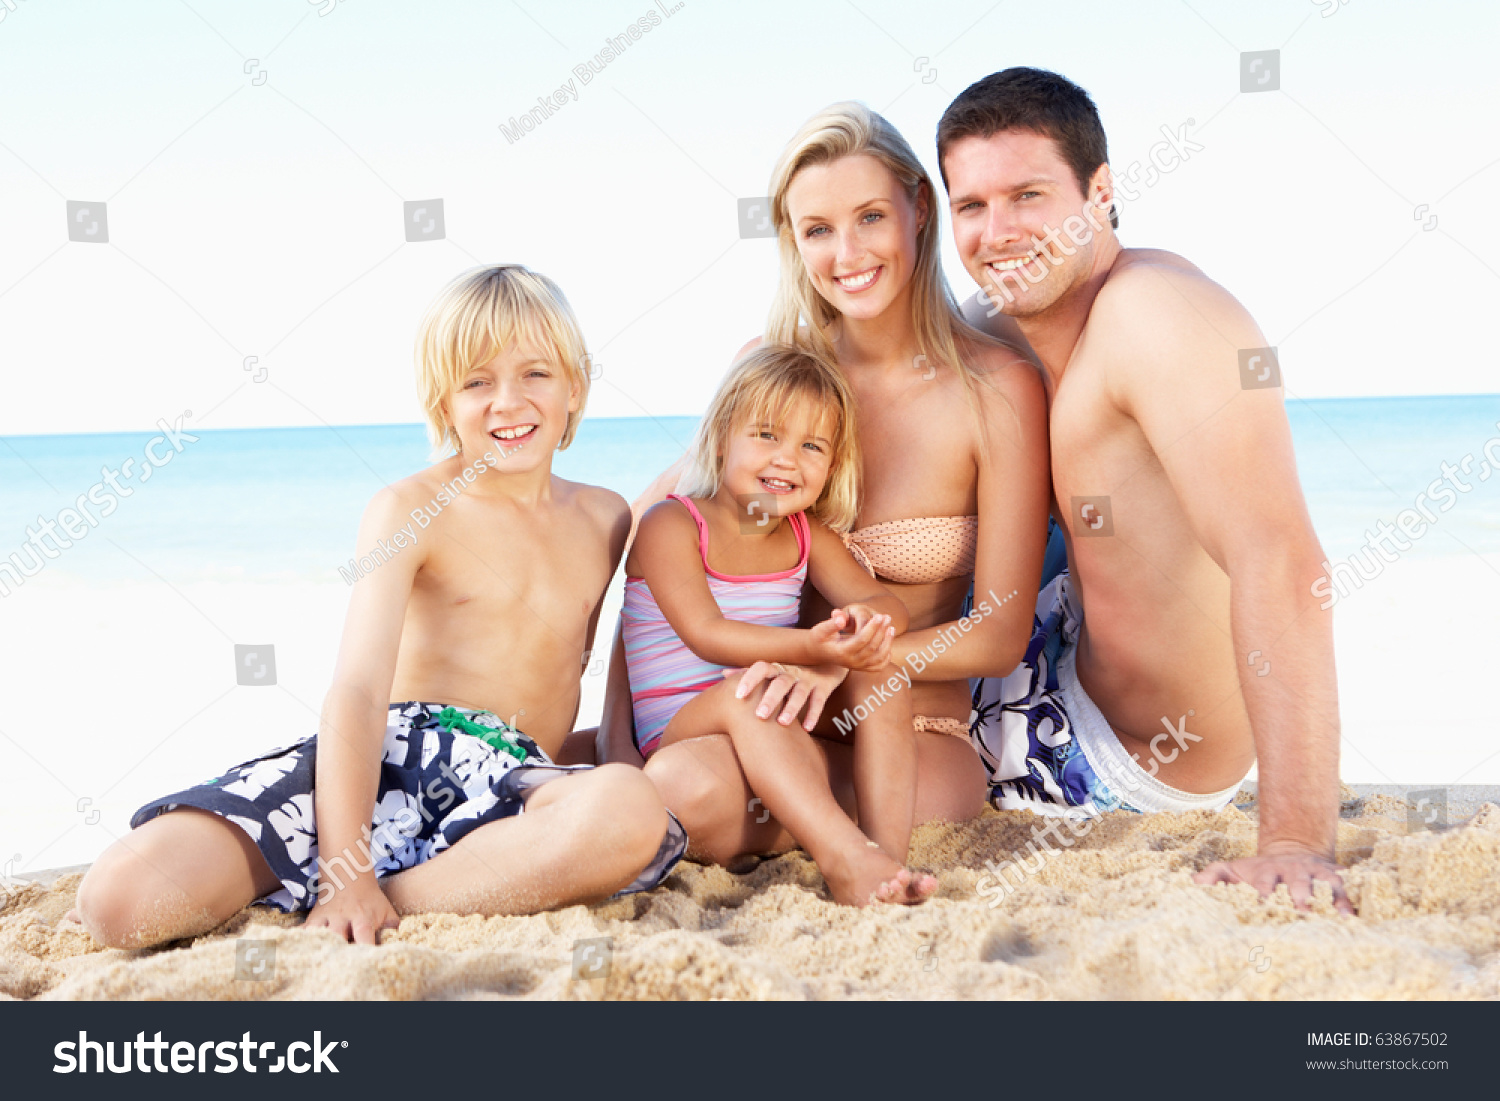 Семейная фотосессия с дочками на пляже